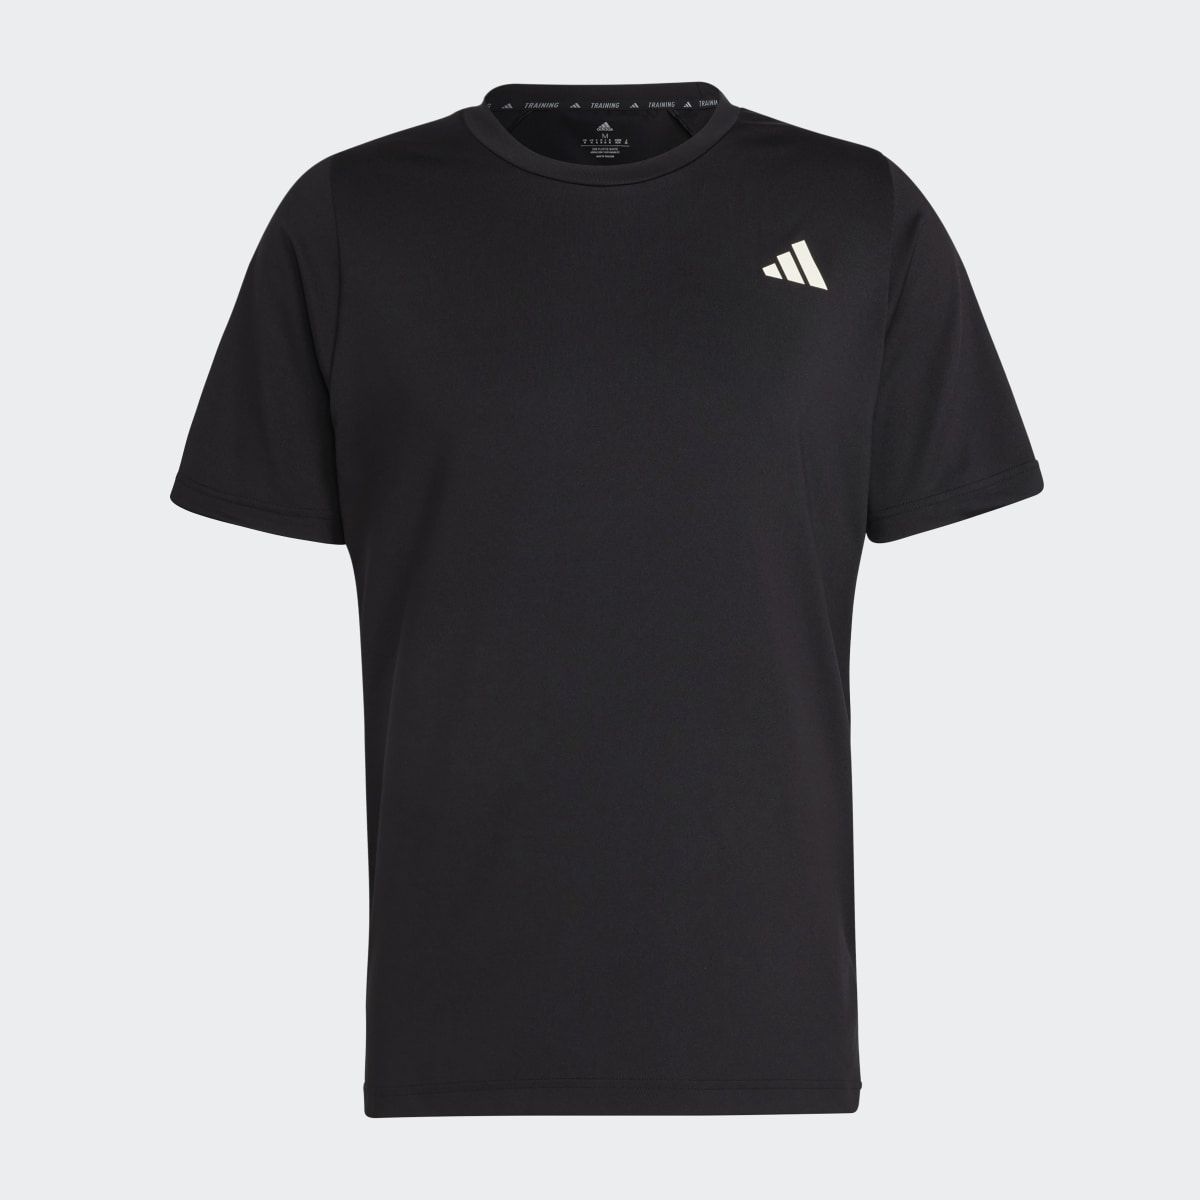 Adidas Sports Club Graphic T-Shirt. 5